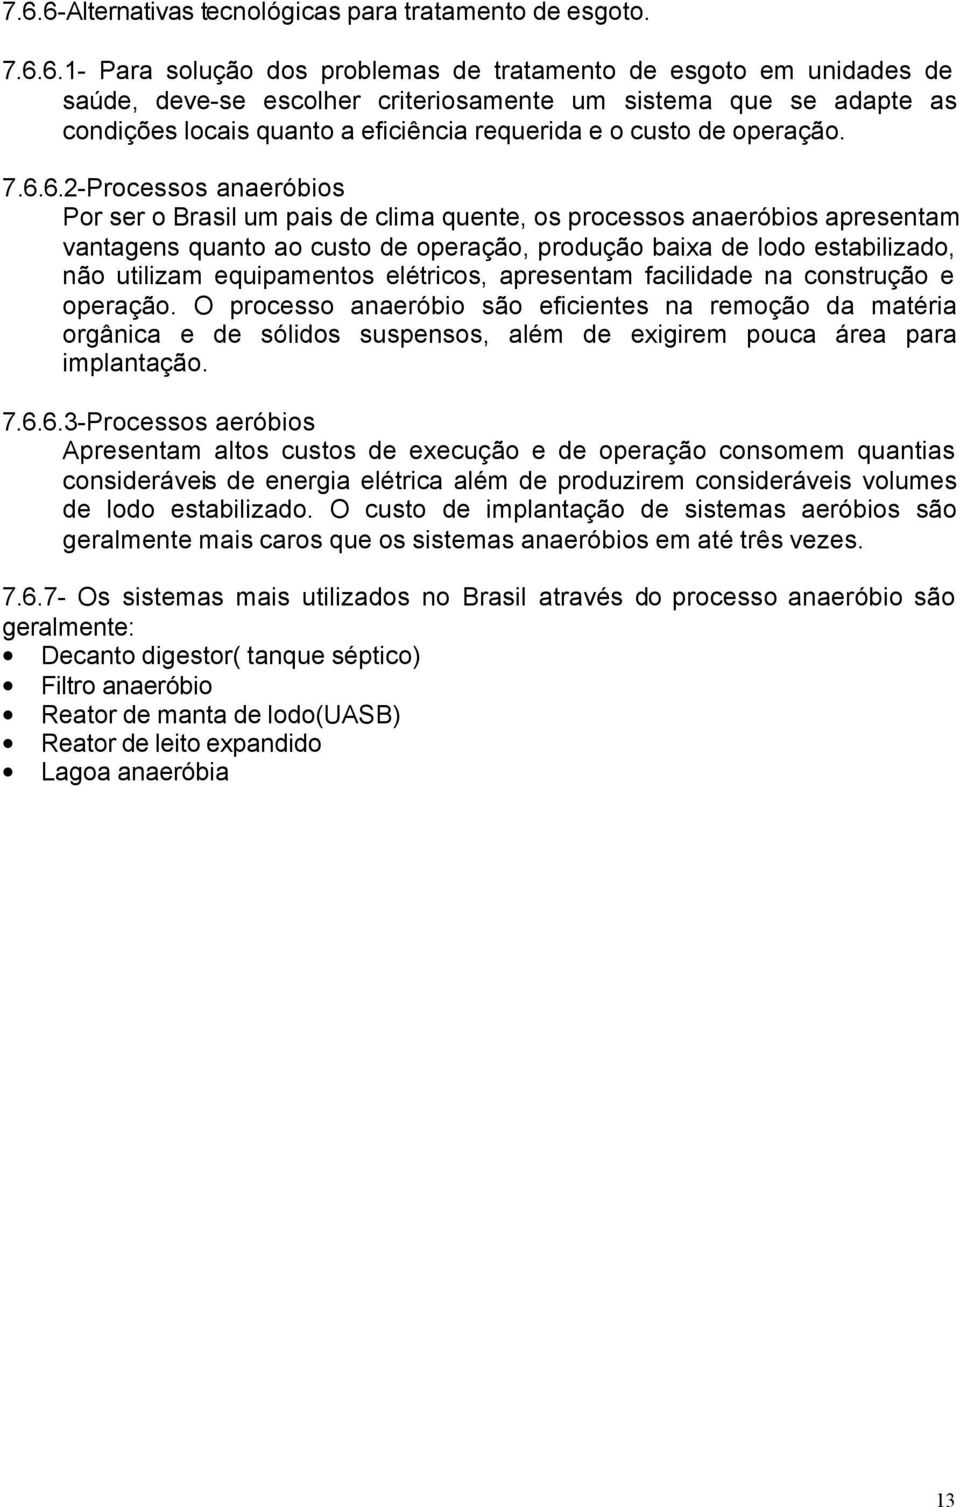 6.2-Processos anaeróbios Por ser o Brasil um pais de clima quente, os processos anaeróbios apresentam vantagens quanto ao custo de operação, produção baixa de lodo estabilizado, não utilizam